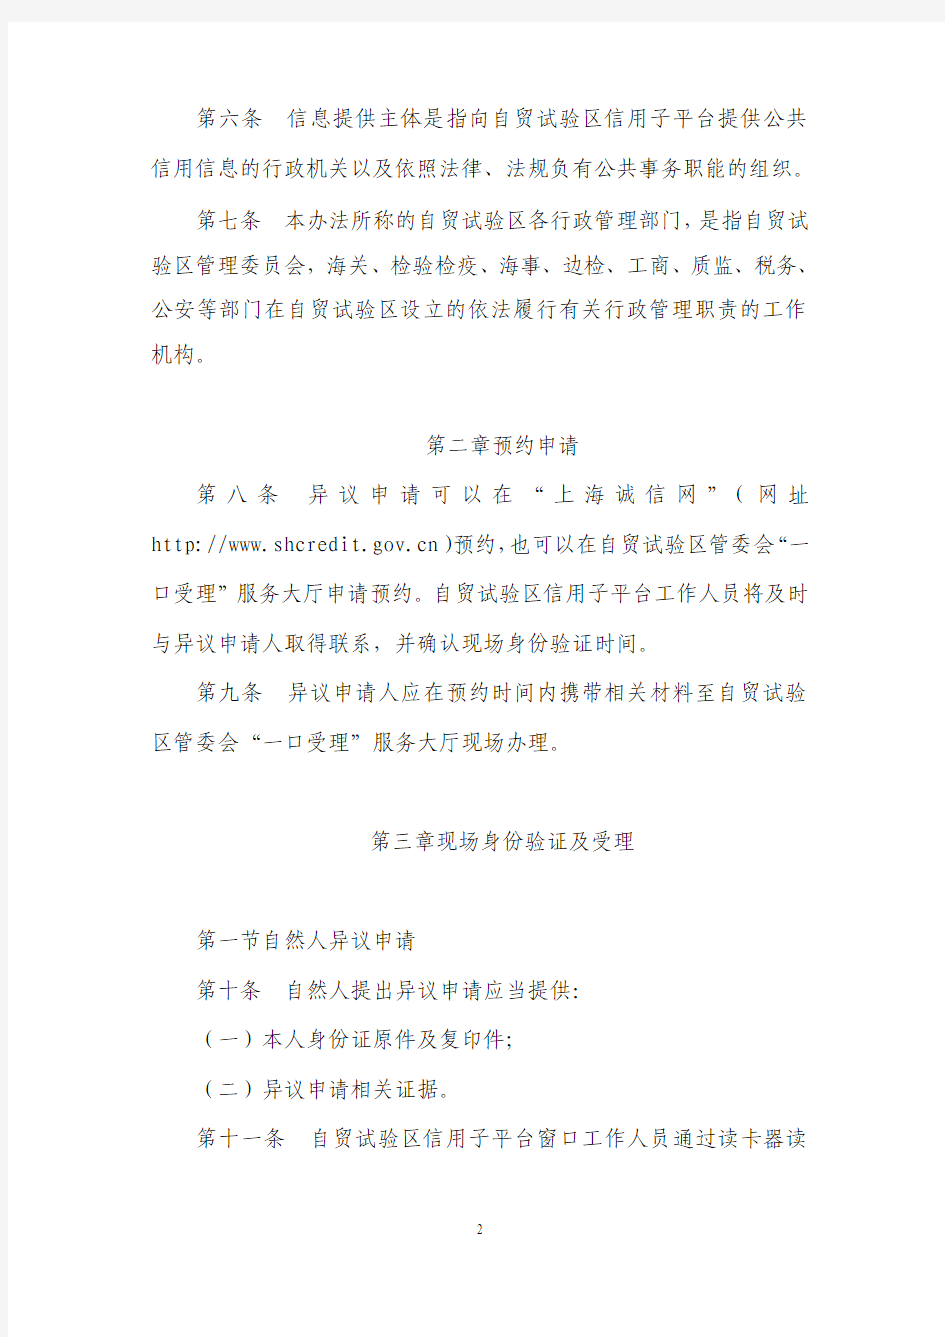 上海市公共信用信息服务平台自贸试验区子平台异议处理实施细则(暂行)doc